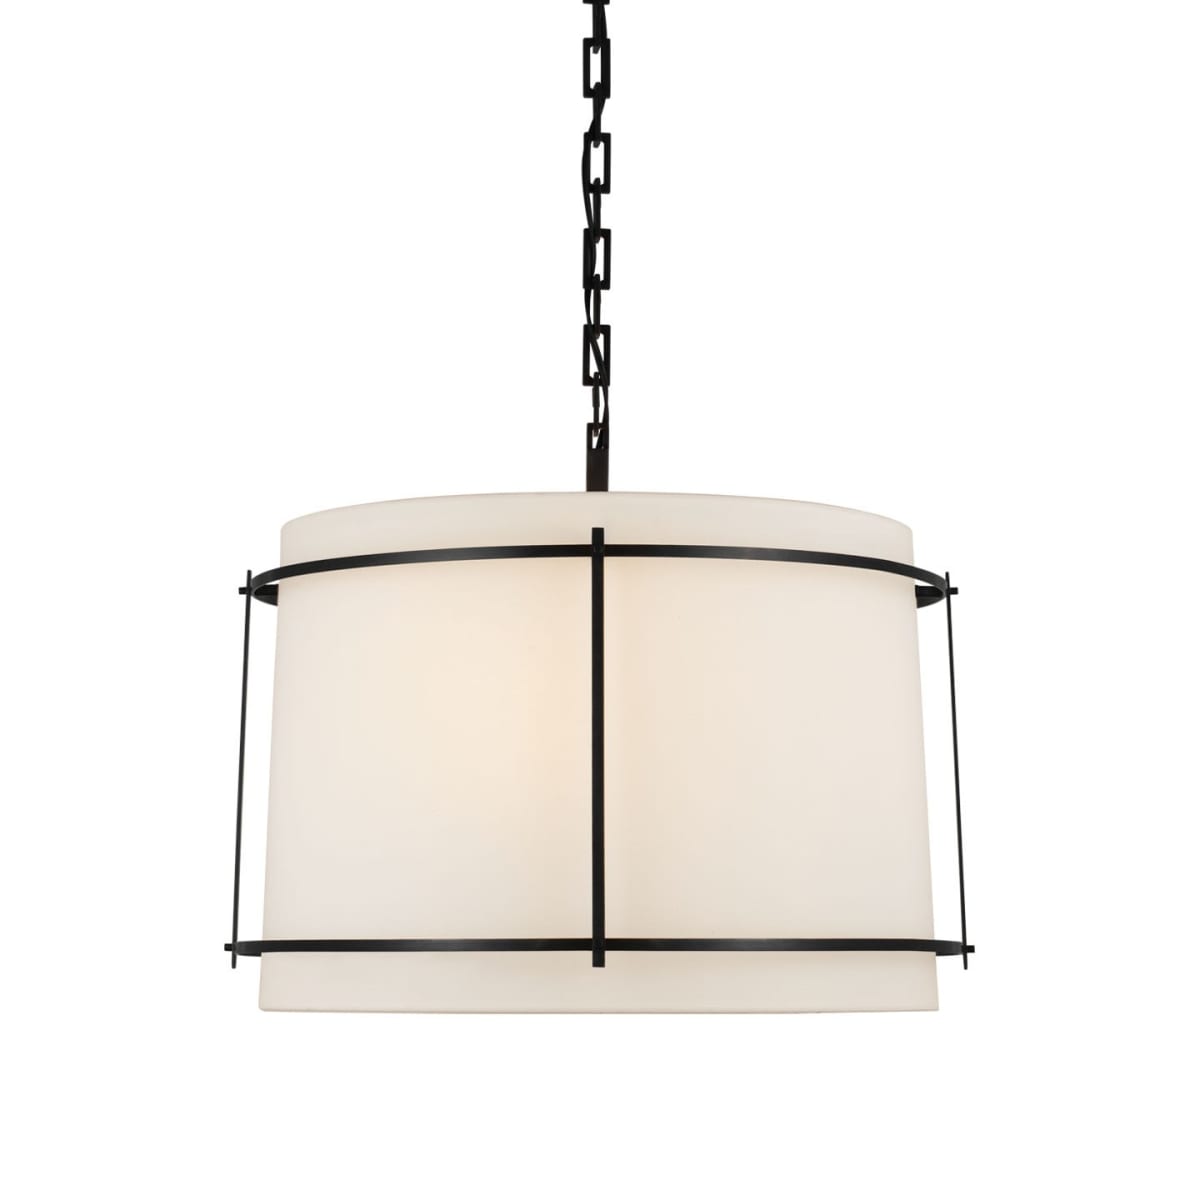 Wall lamp LED flex Blitz white 3Watt dimmable - R&M Lighting